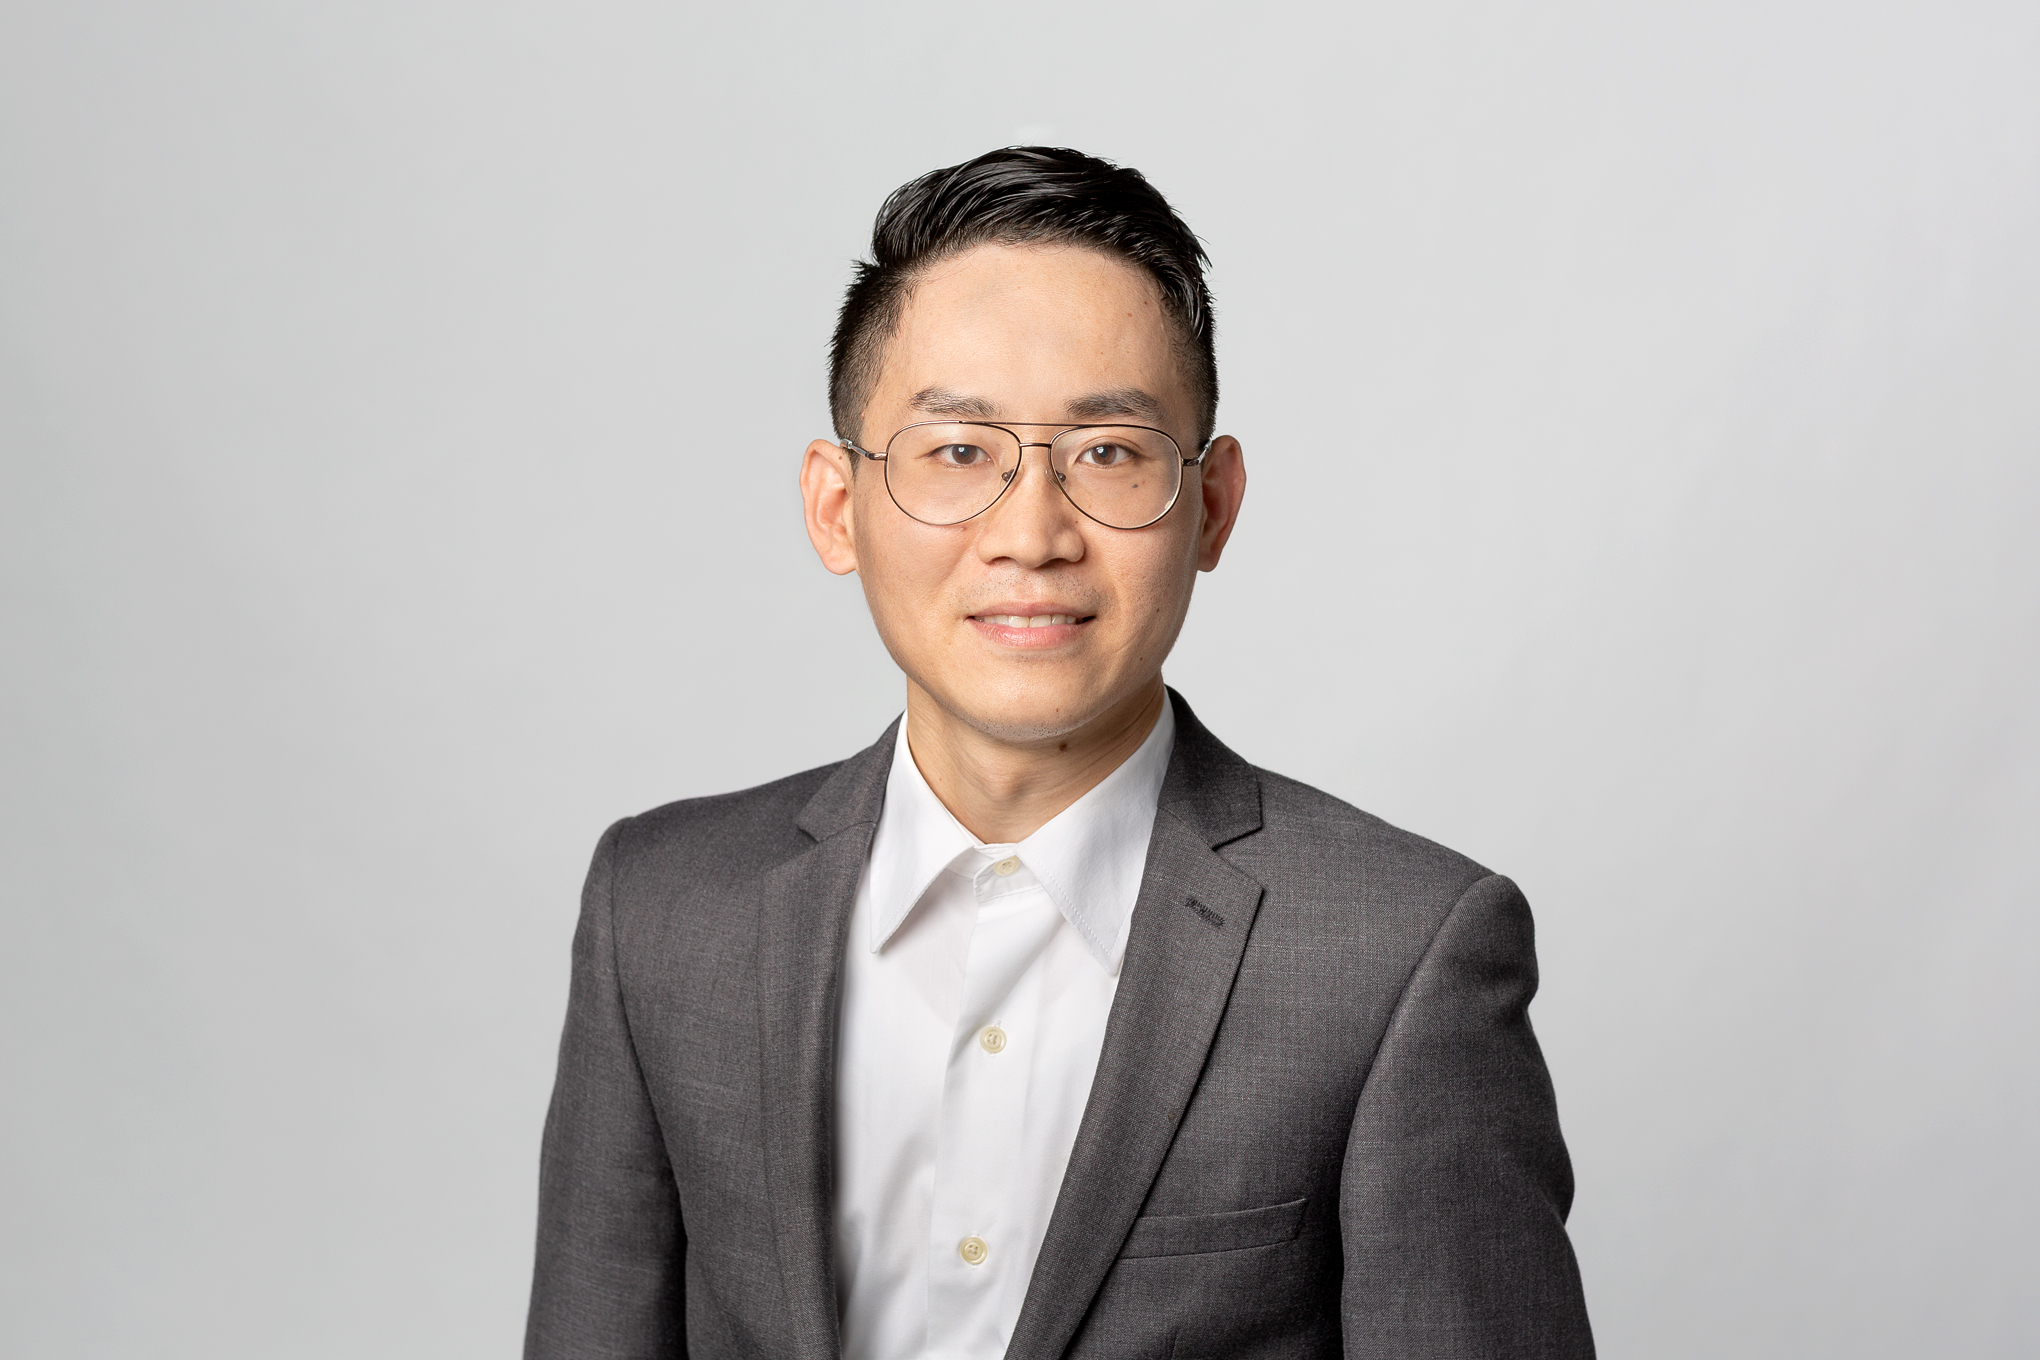 Richard Chang, CPA, Senior Staff Accountant at Allay LLP